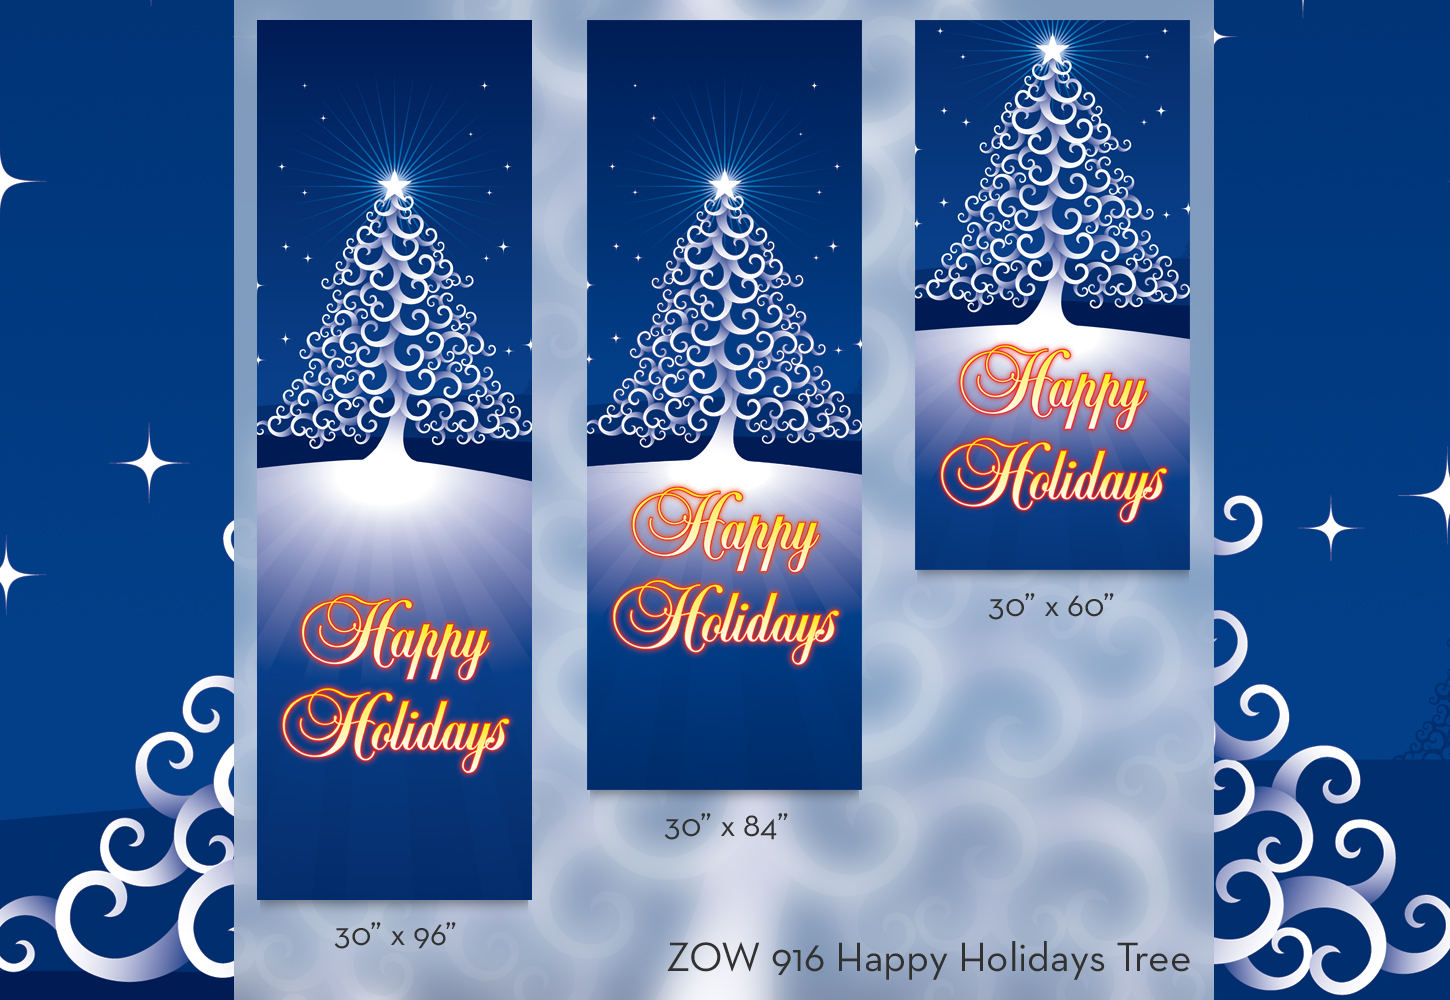 ZOW 916 Happy Holidays Tree